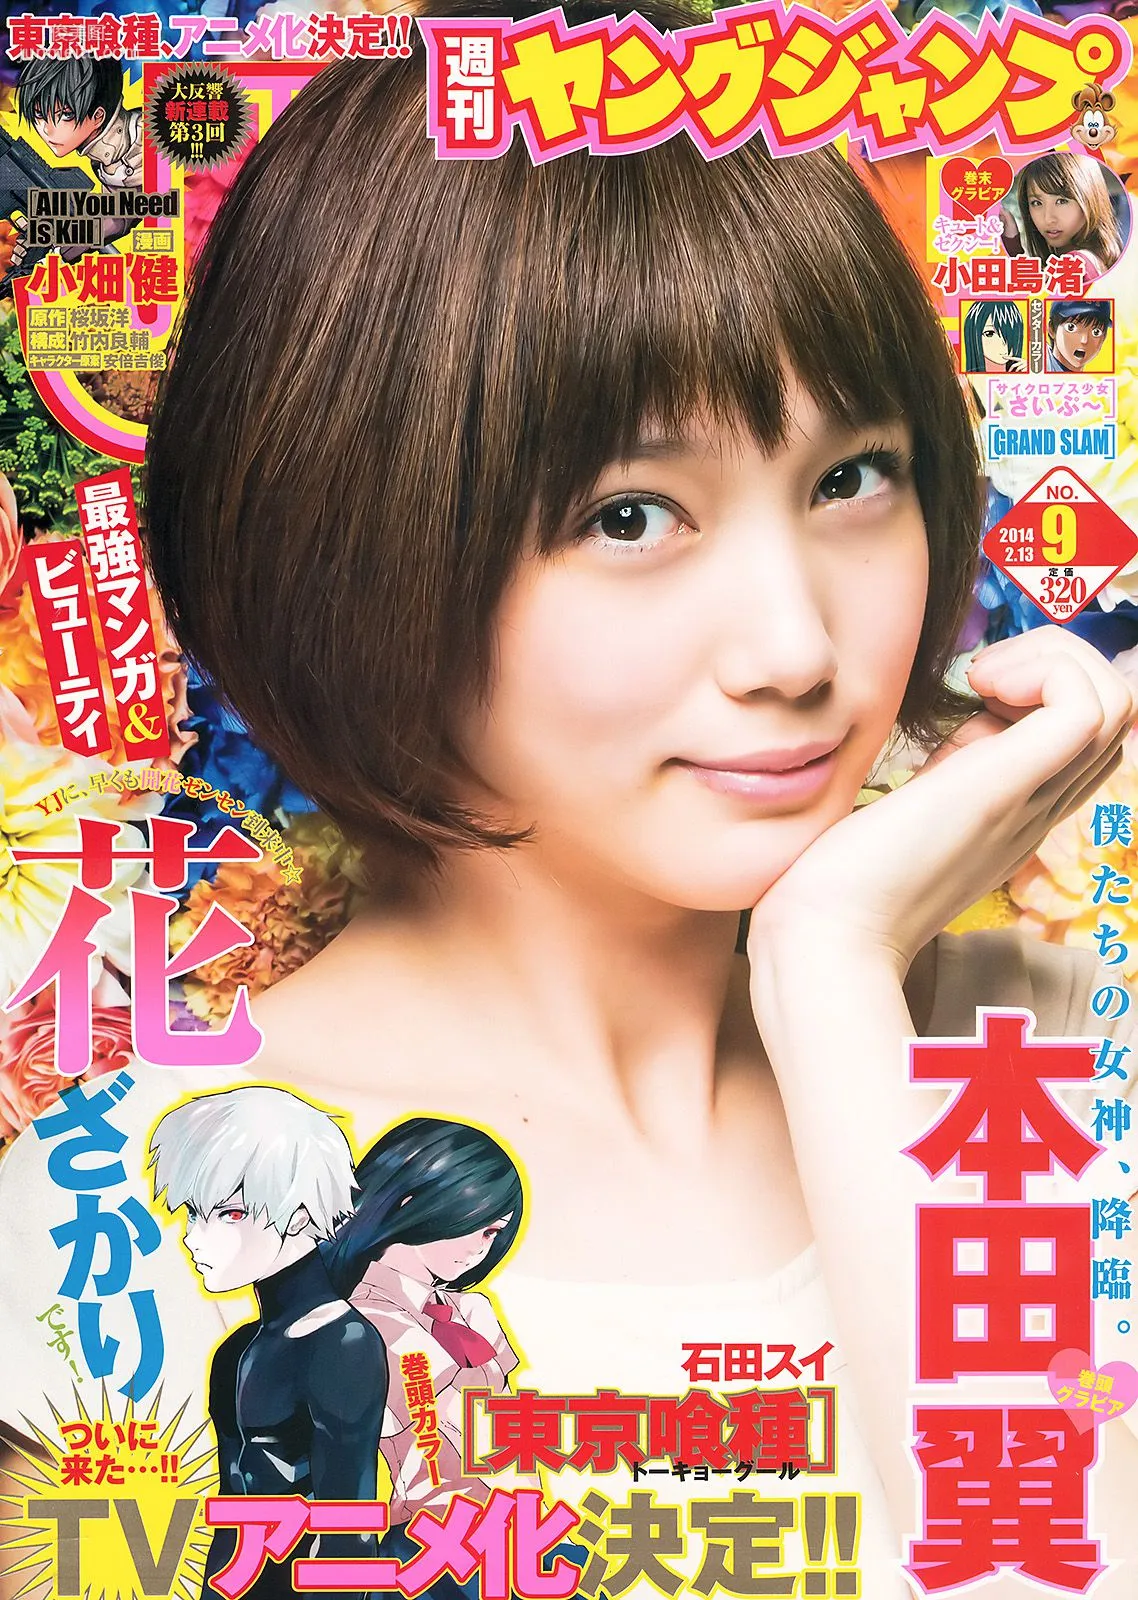 本田翼 小田島渚 [Weekly Young Jump] 2014年No.09 写真杂志1